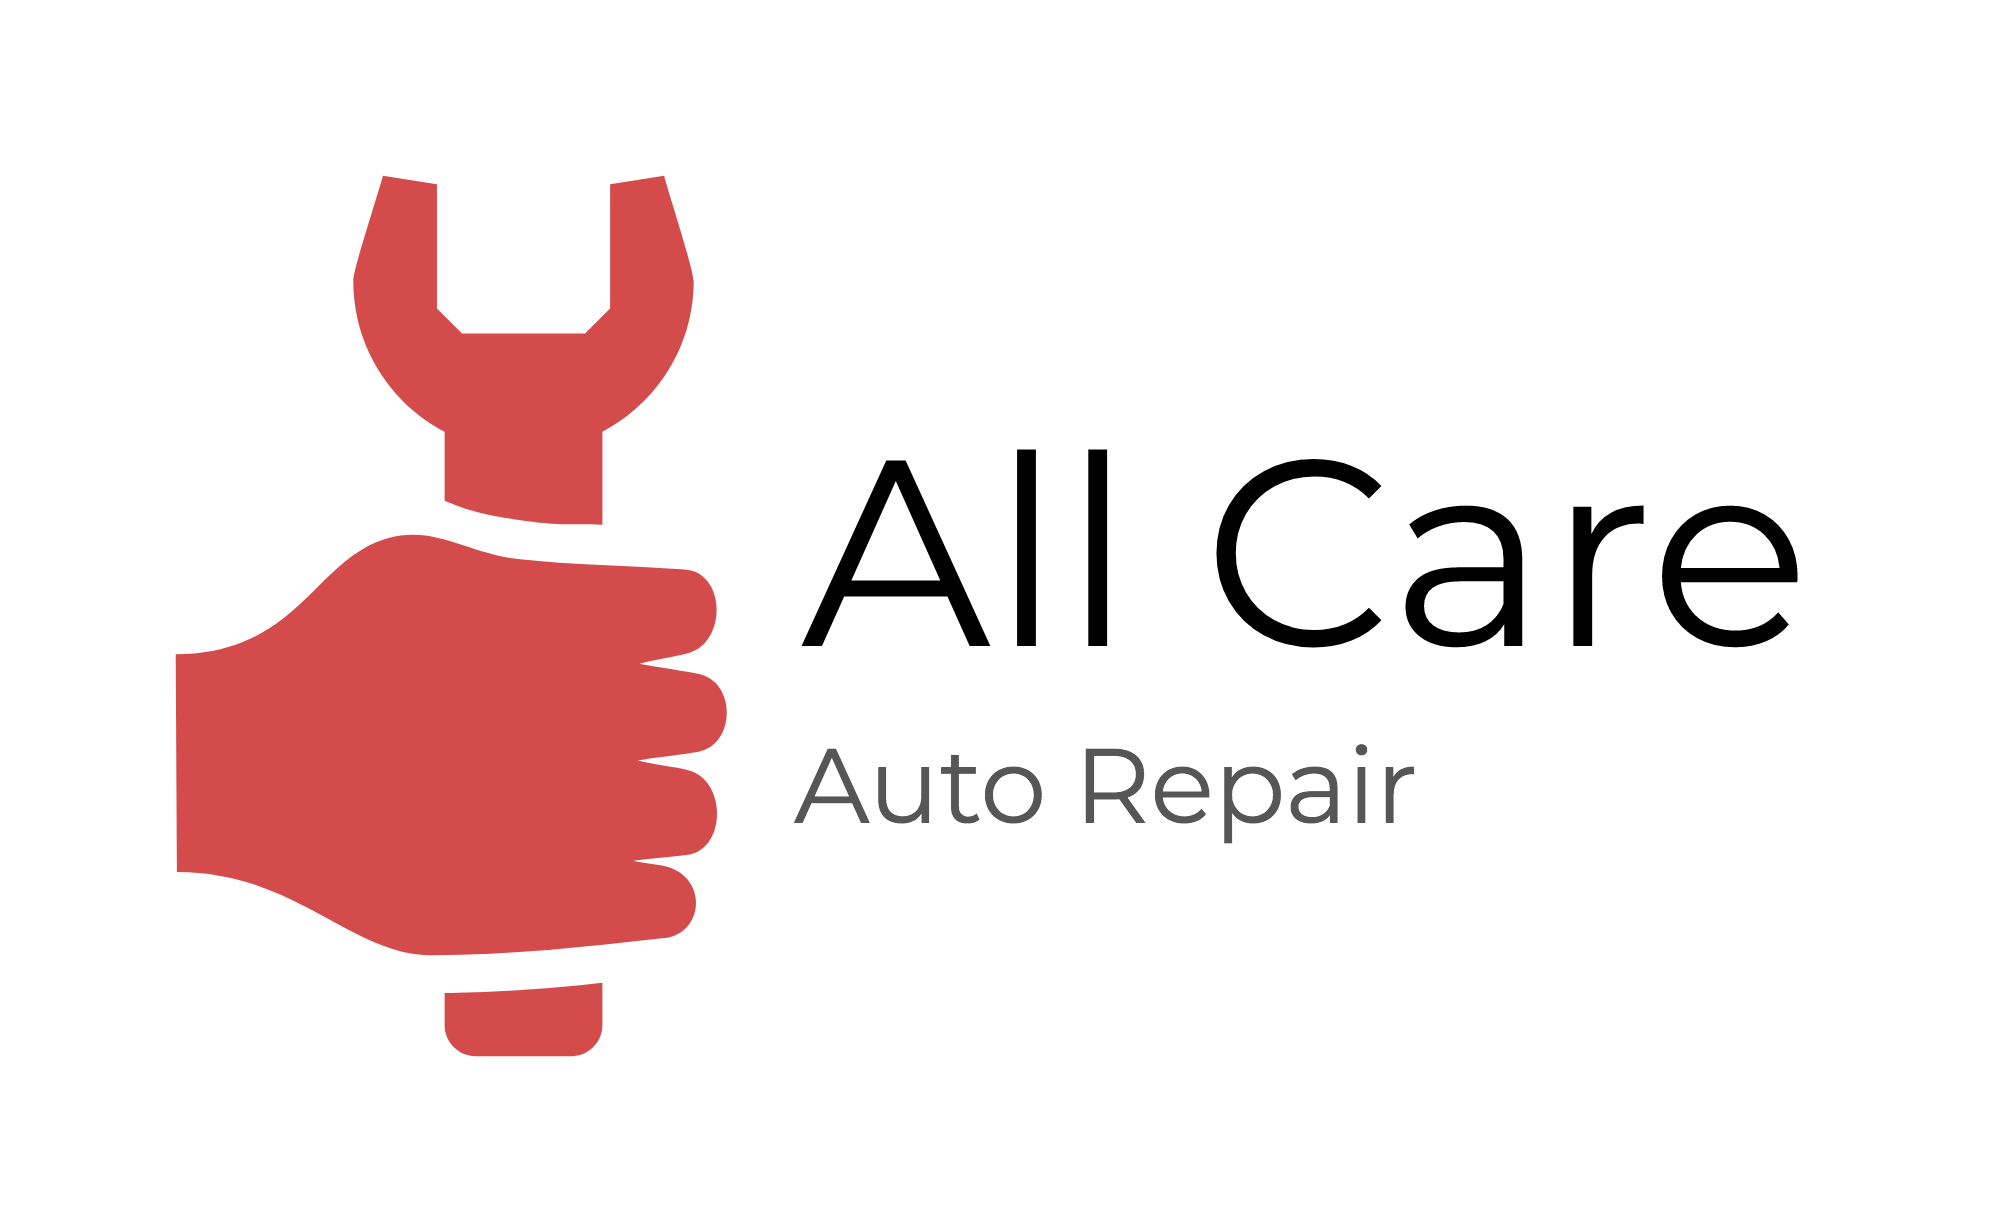 All Care Auto Repair